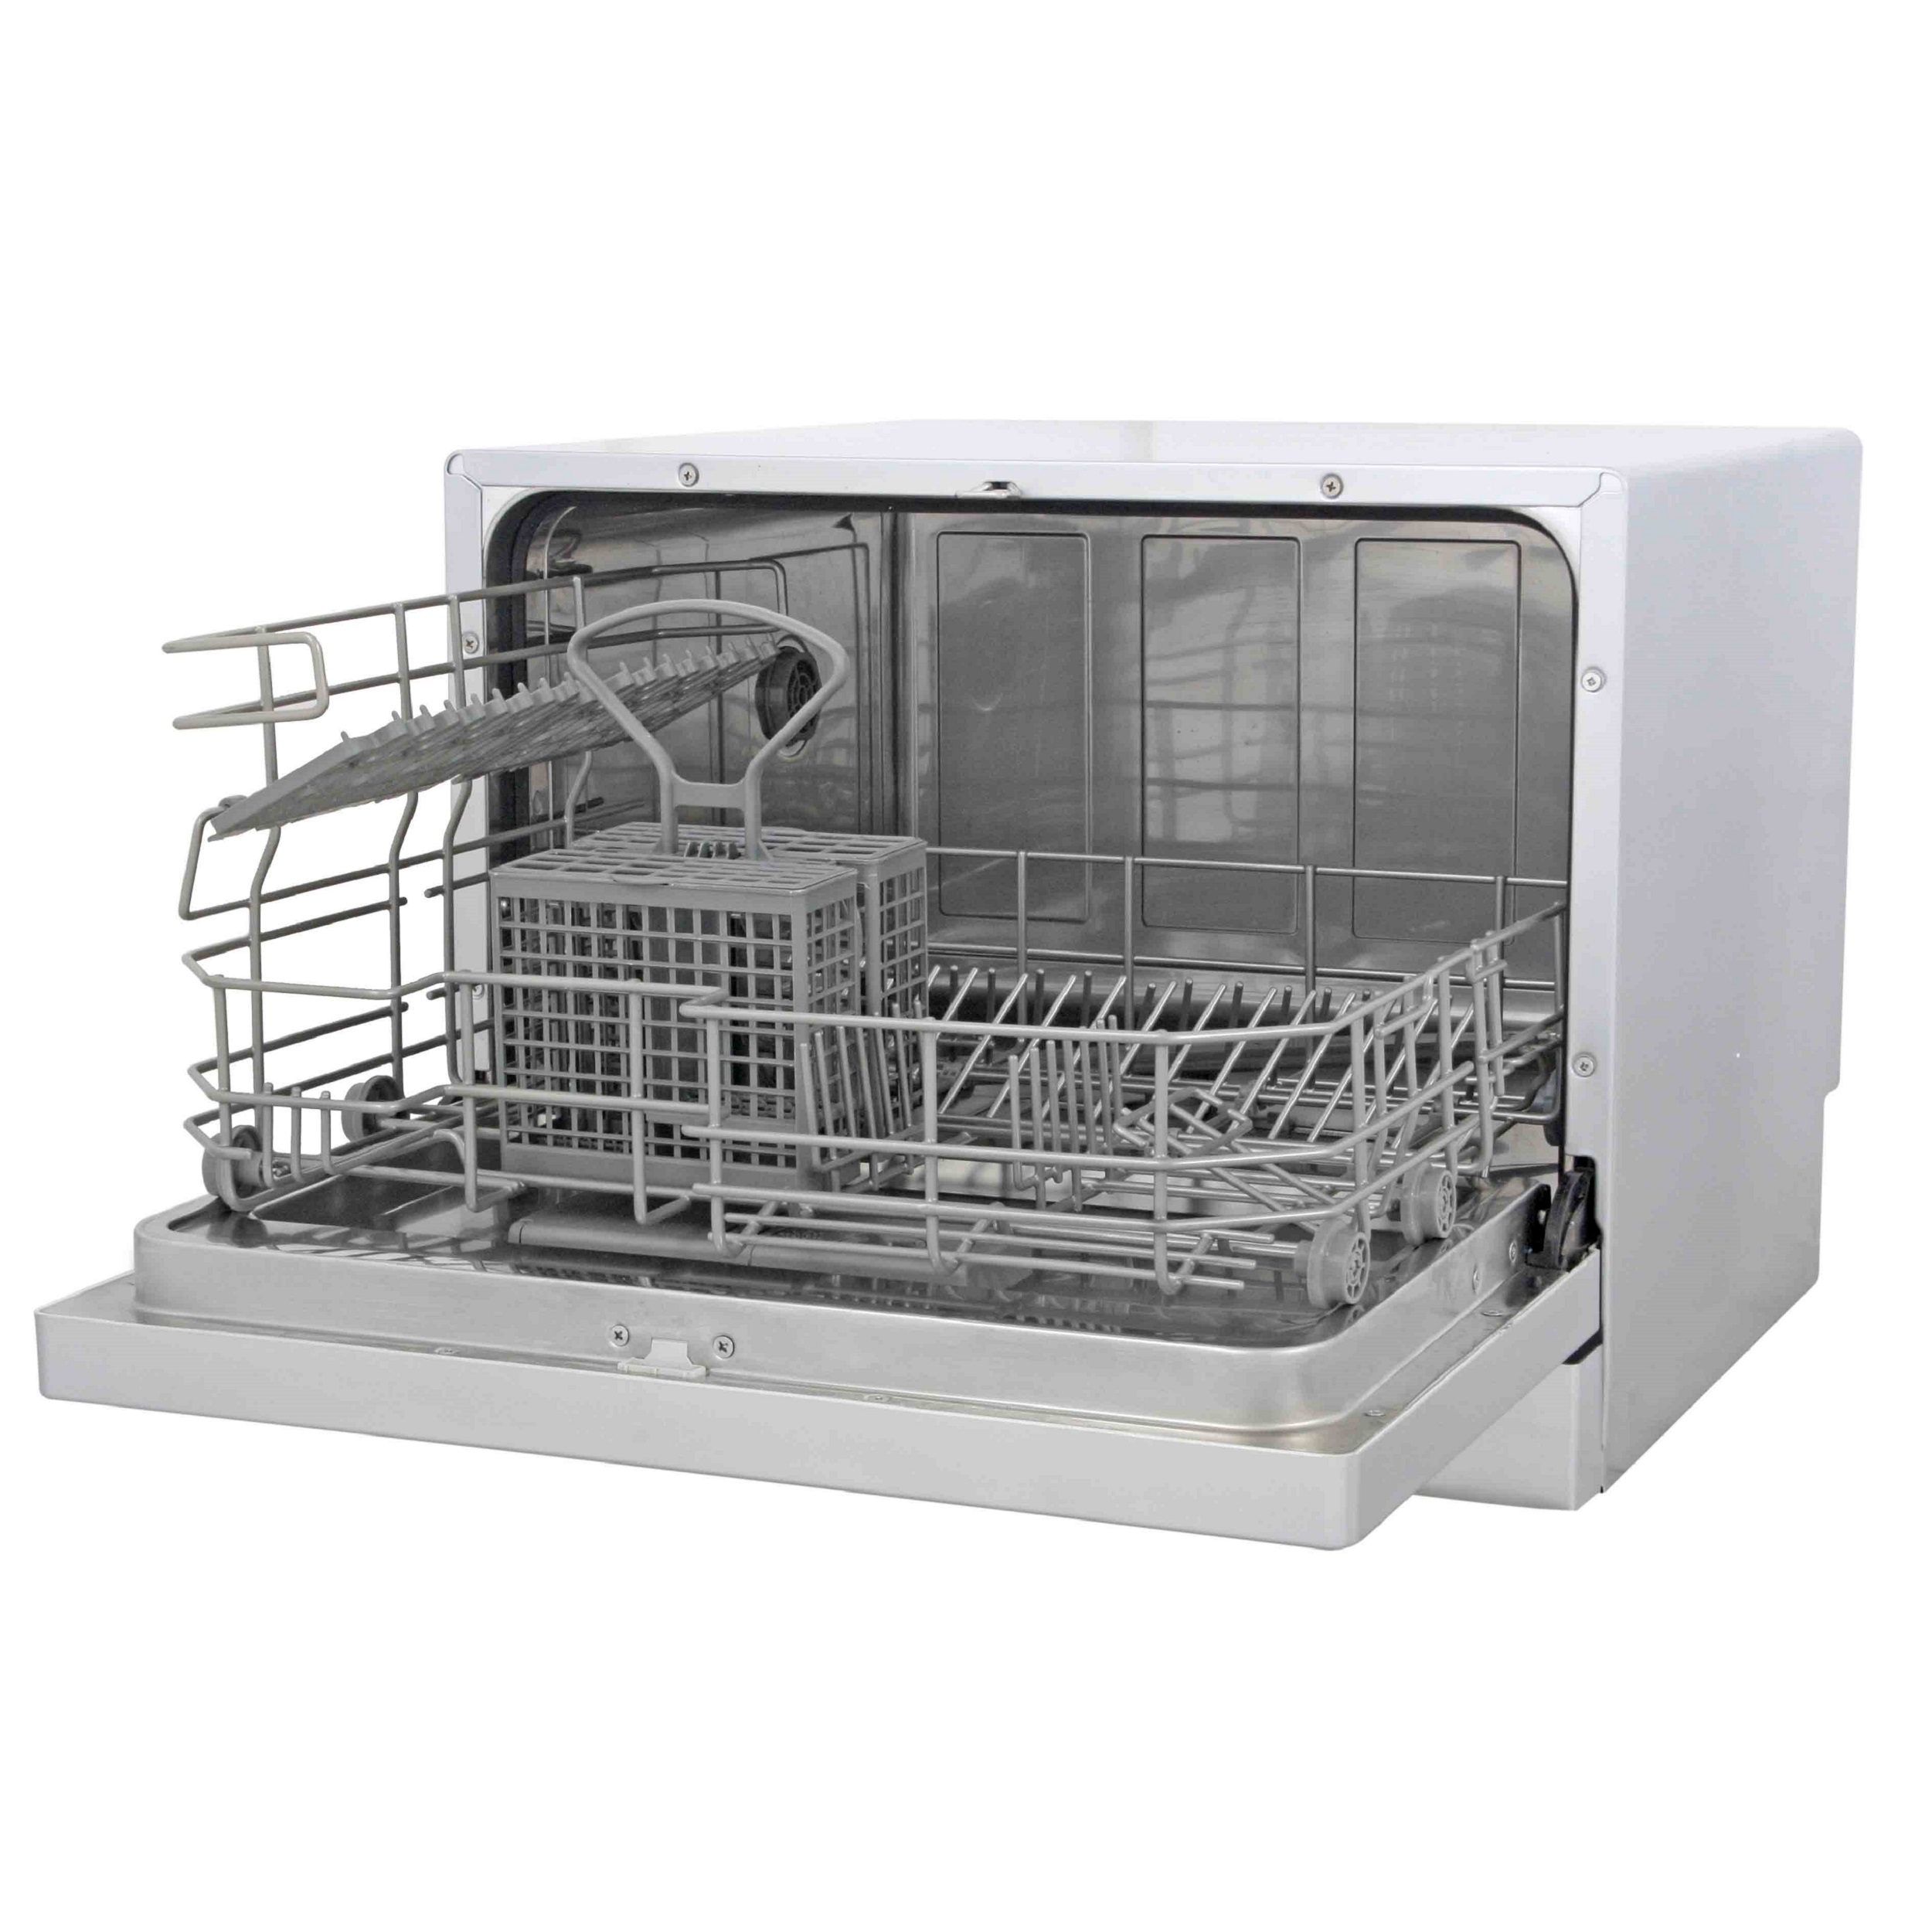 ماشین ظرفشویی رومیزی زیرووات مدل ZDCF6